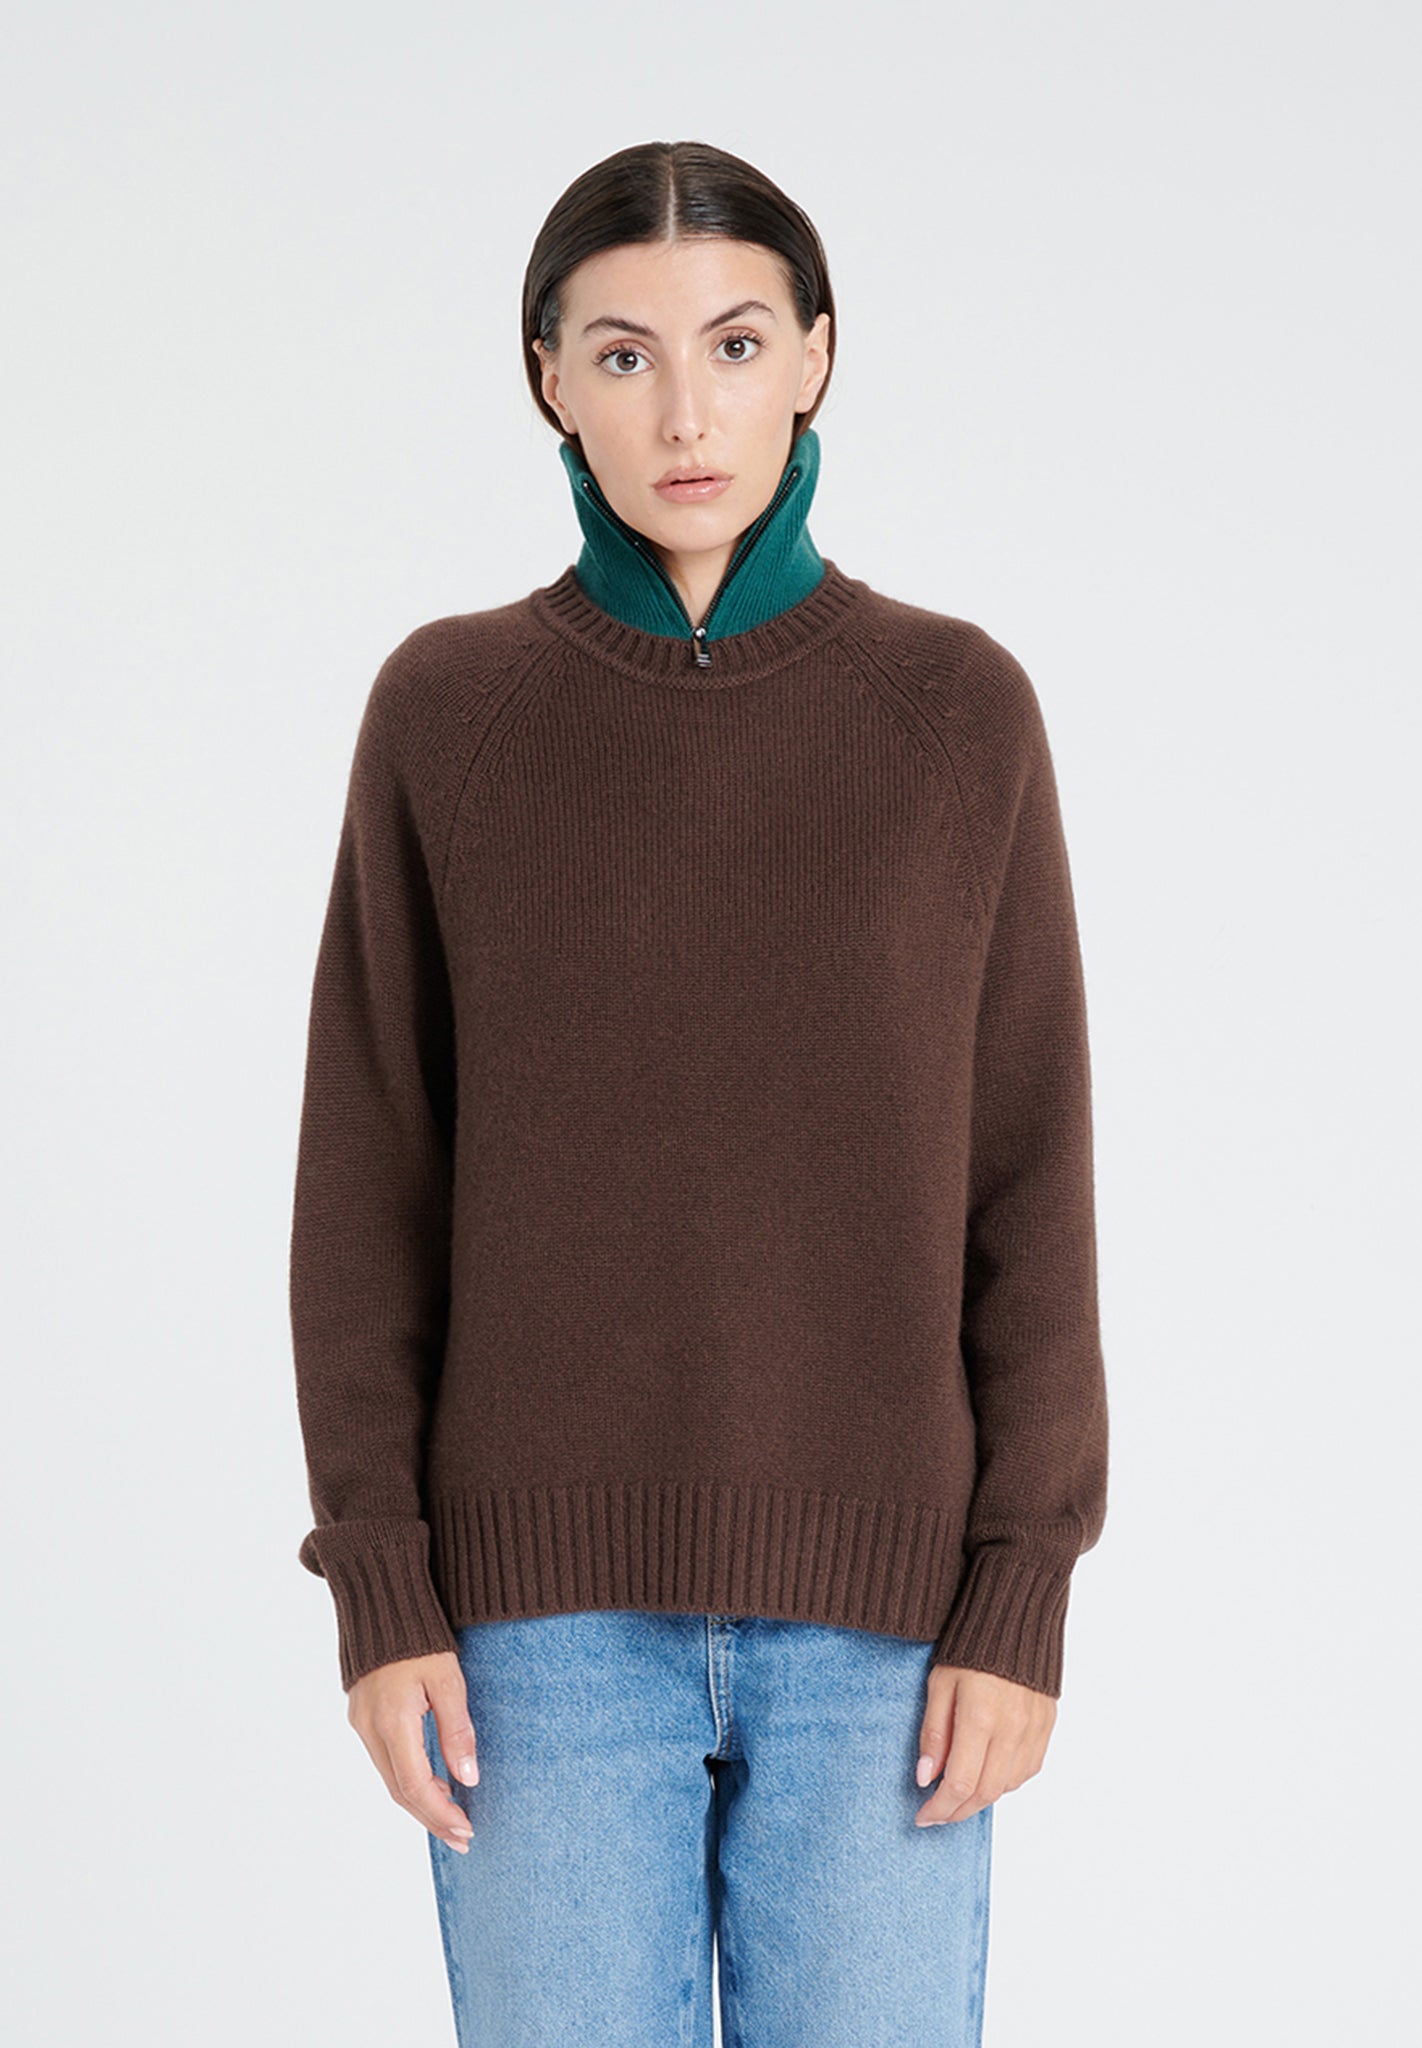 ZAYA 7 Round neck sweater with raglan sleeves in brown 6-thread cashmere